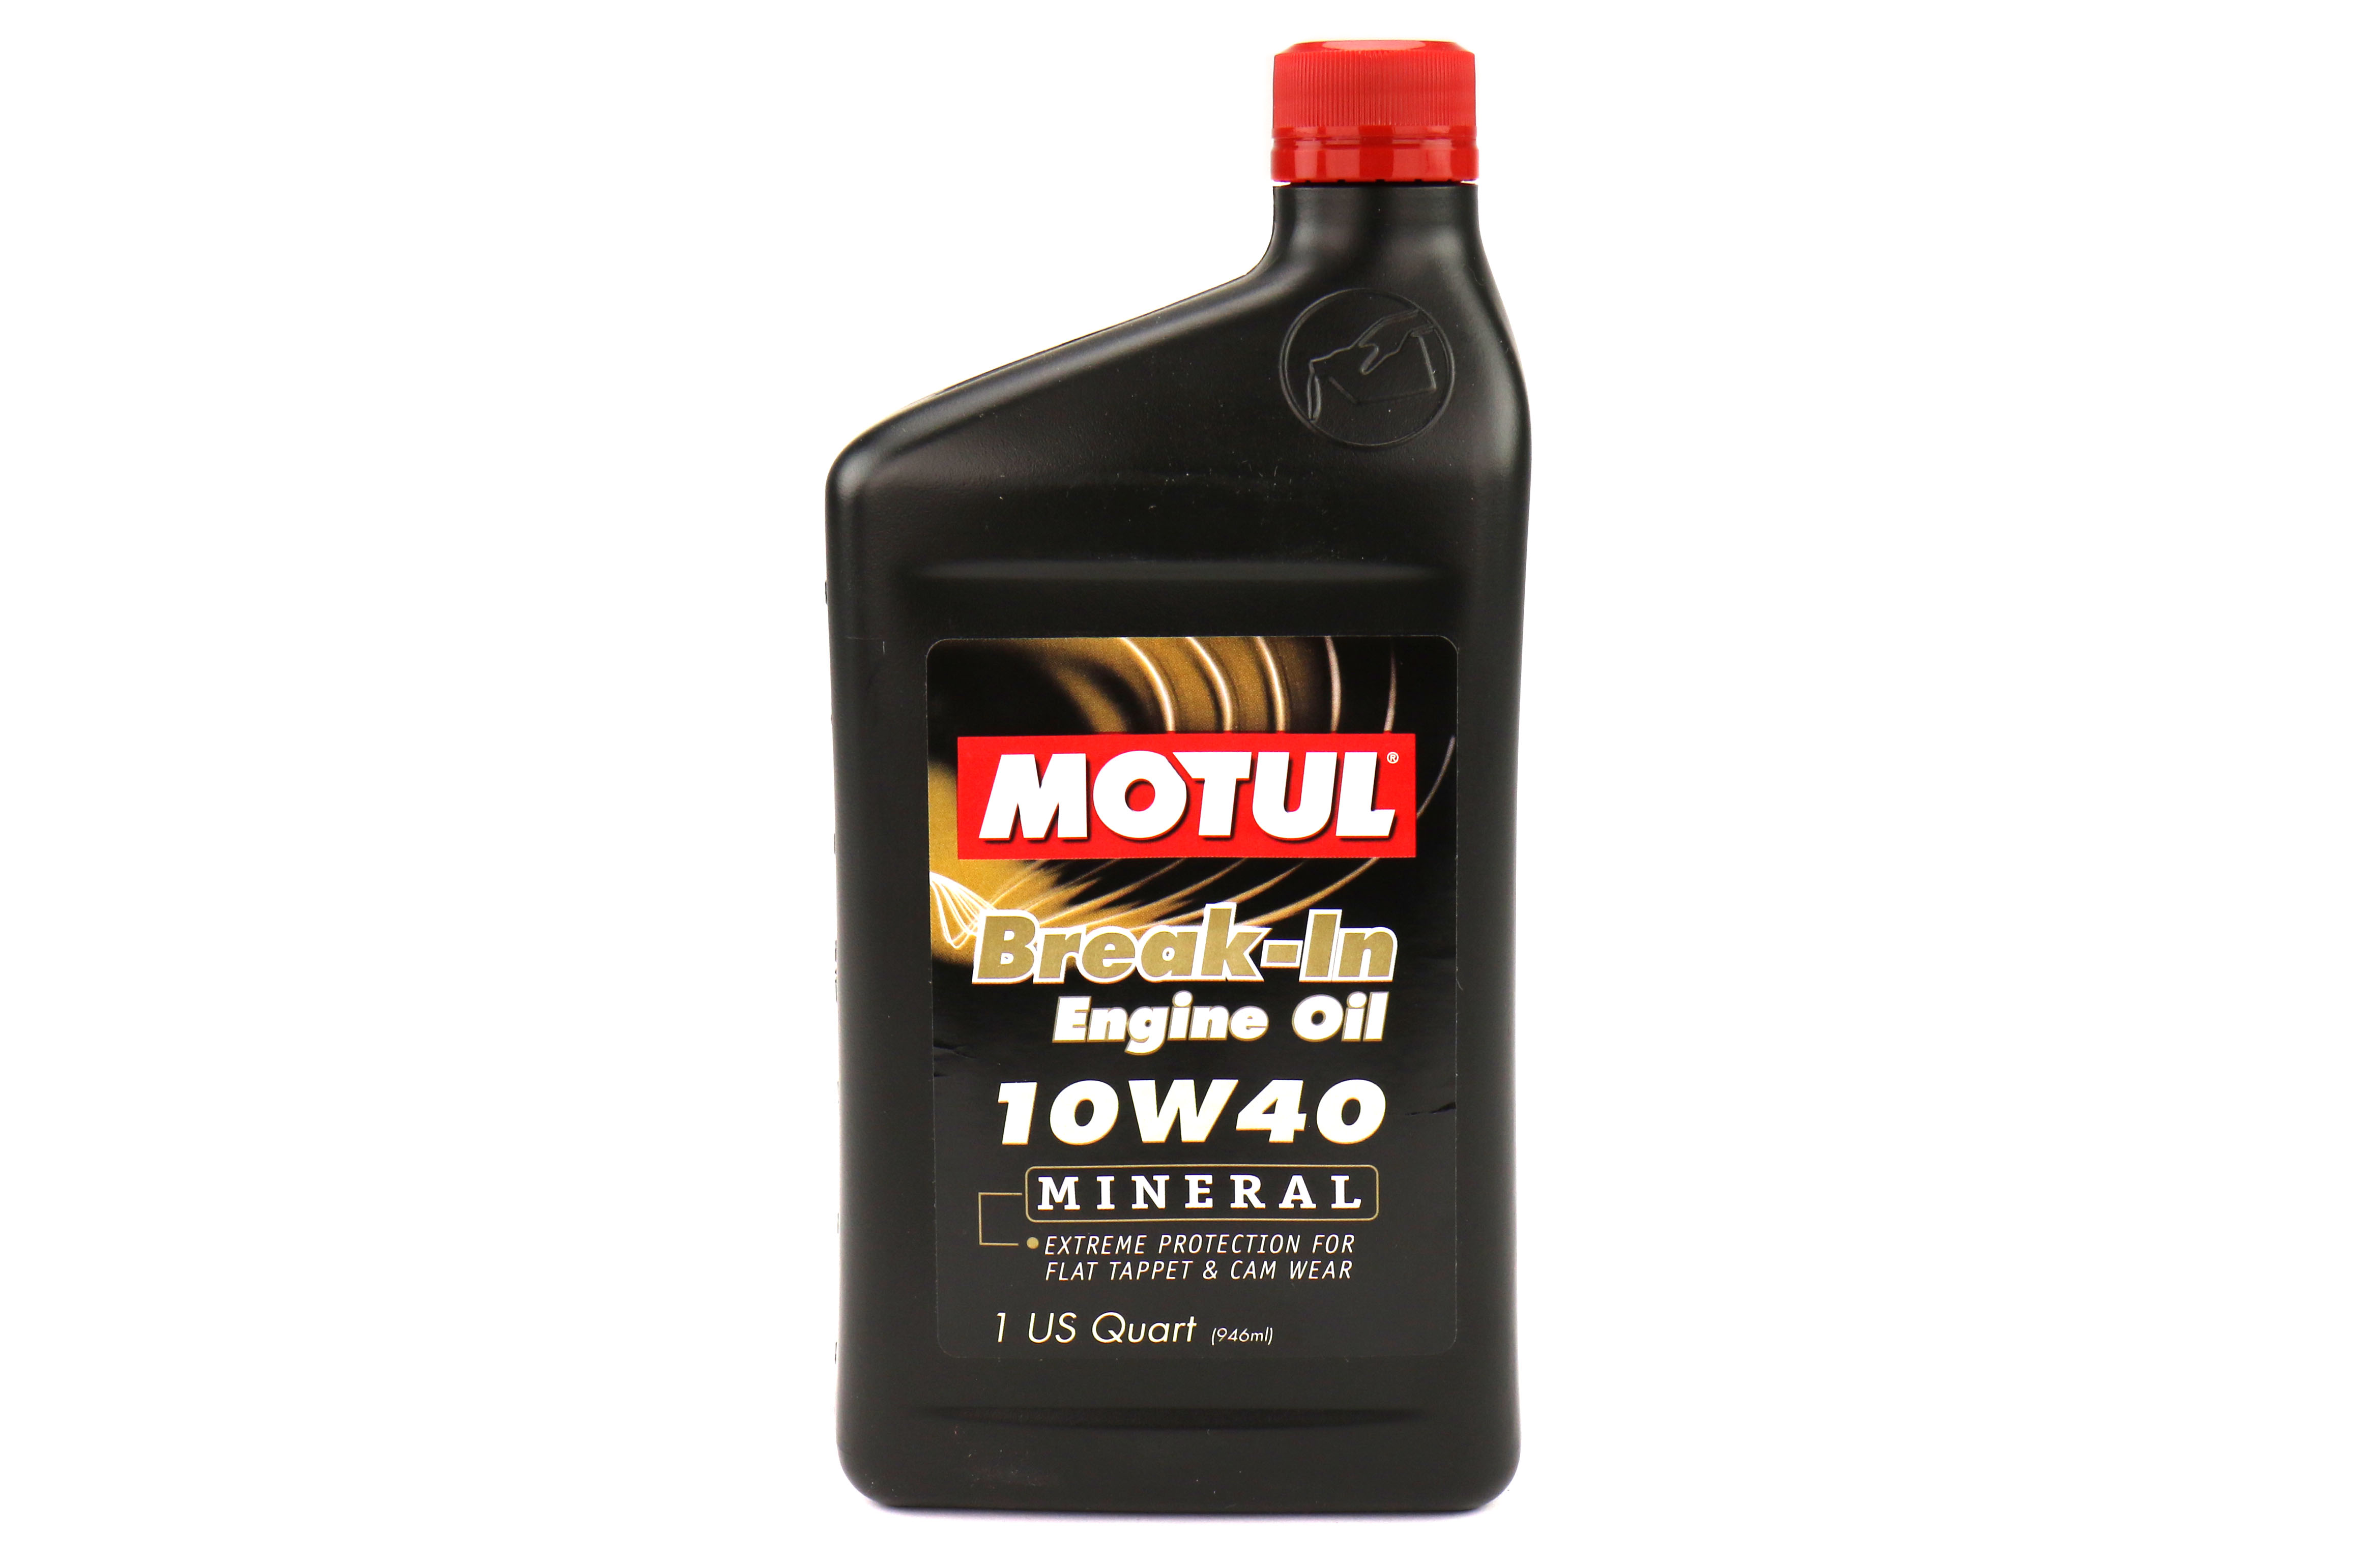 Motul Break-In Engine Oil 10W40 (MINERAL)